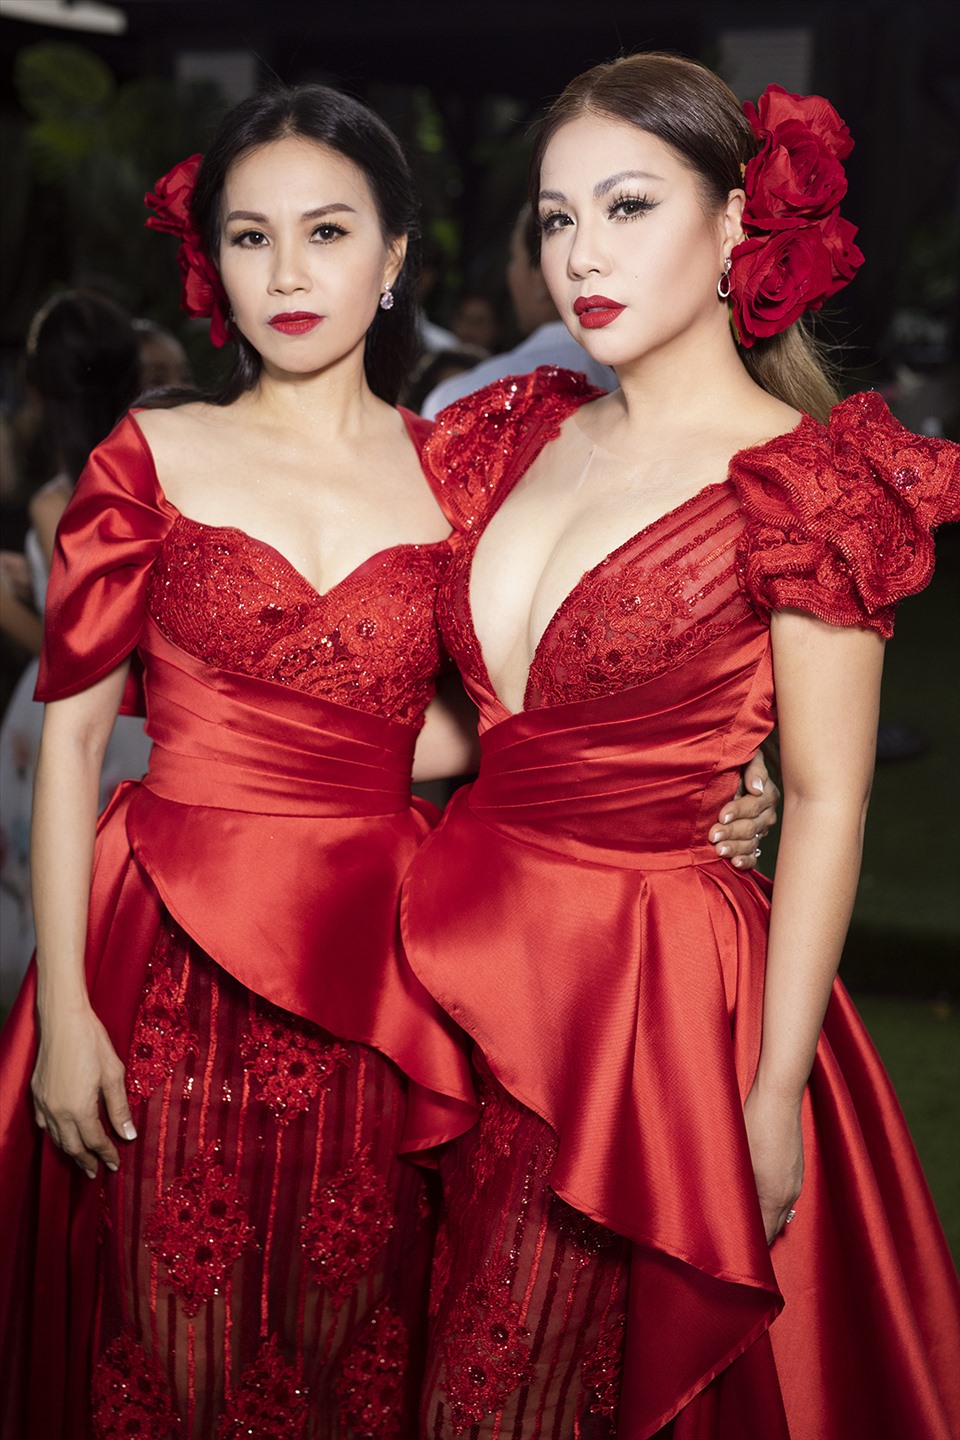 Hai nữ ca sĩ diện váy dạ hội sequins, hóa thân thành hình tượng “nữ hoàng” trong khu vườn hoa hồng.